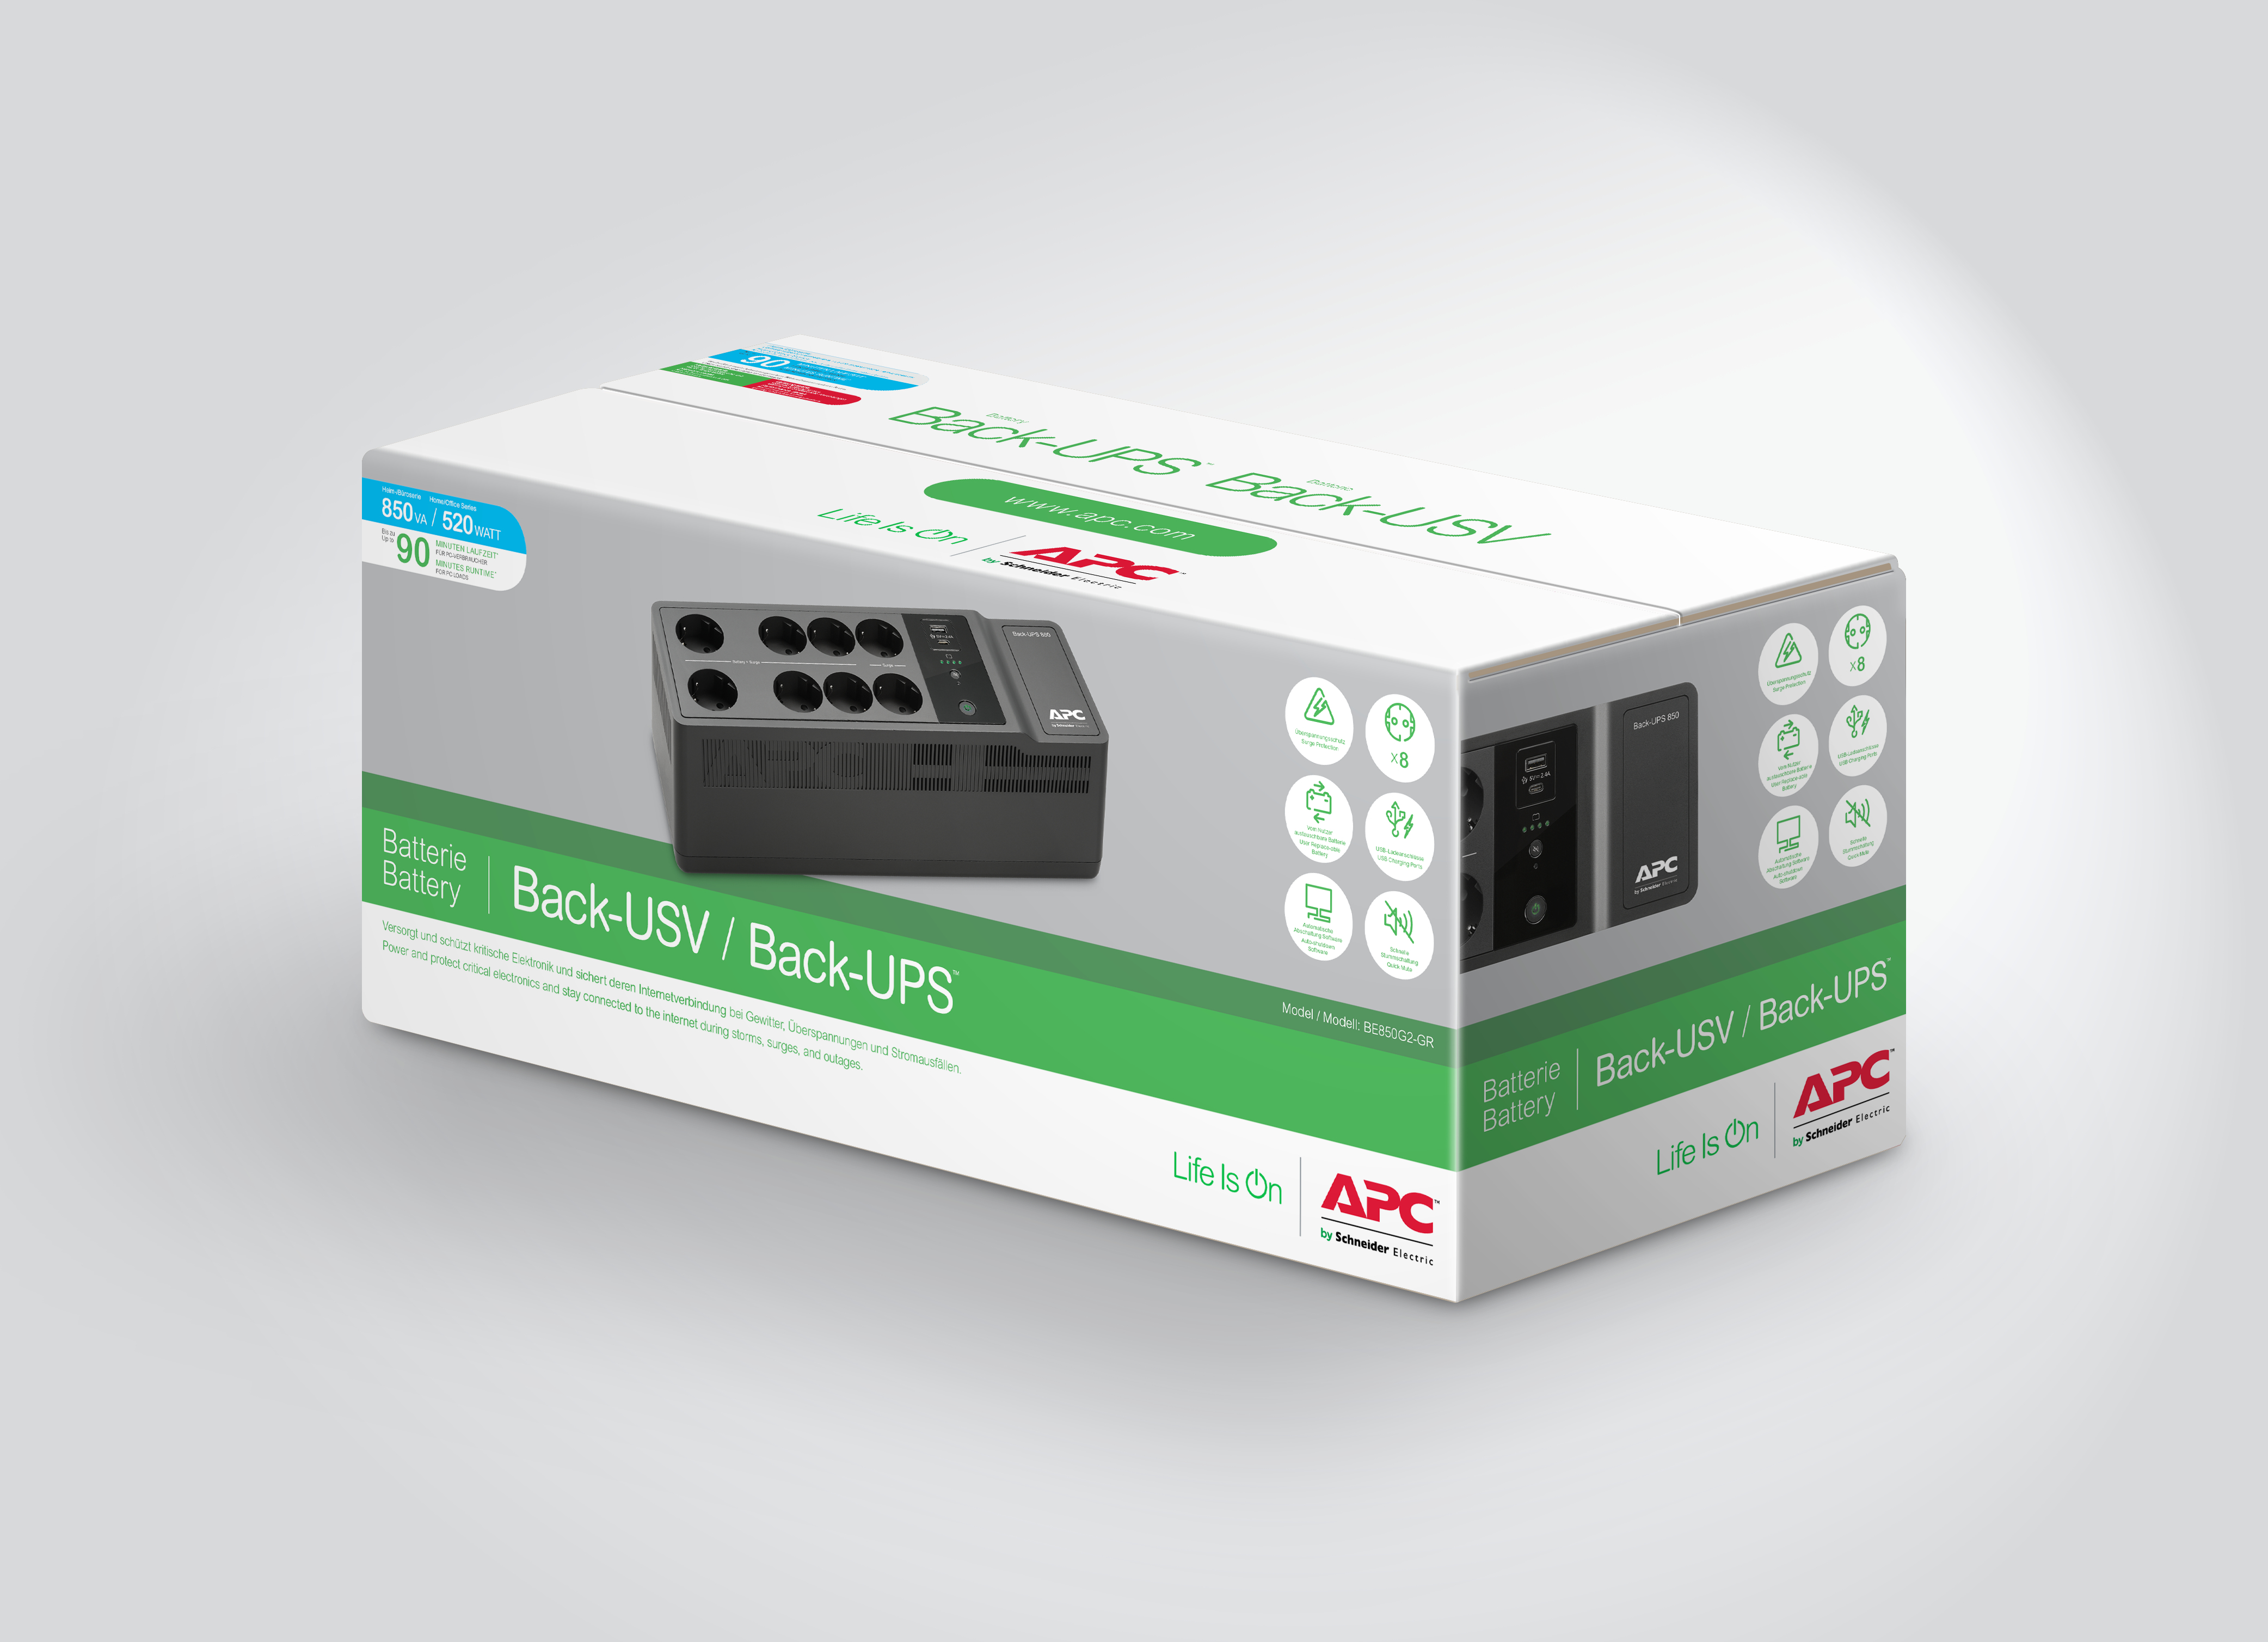 APC Back-UPS 850VA, 230V, USB Type-C and A